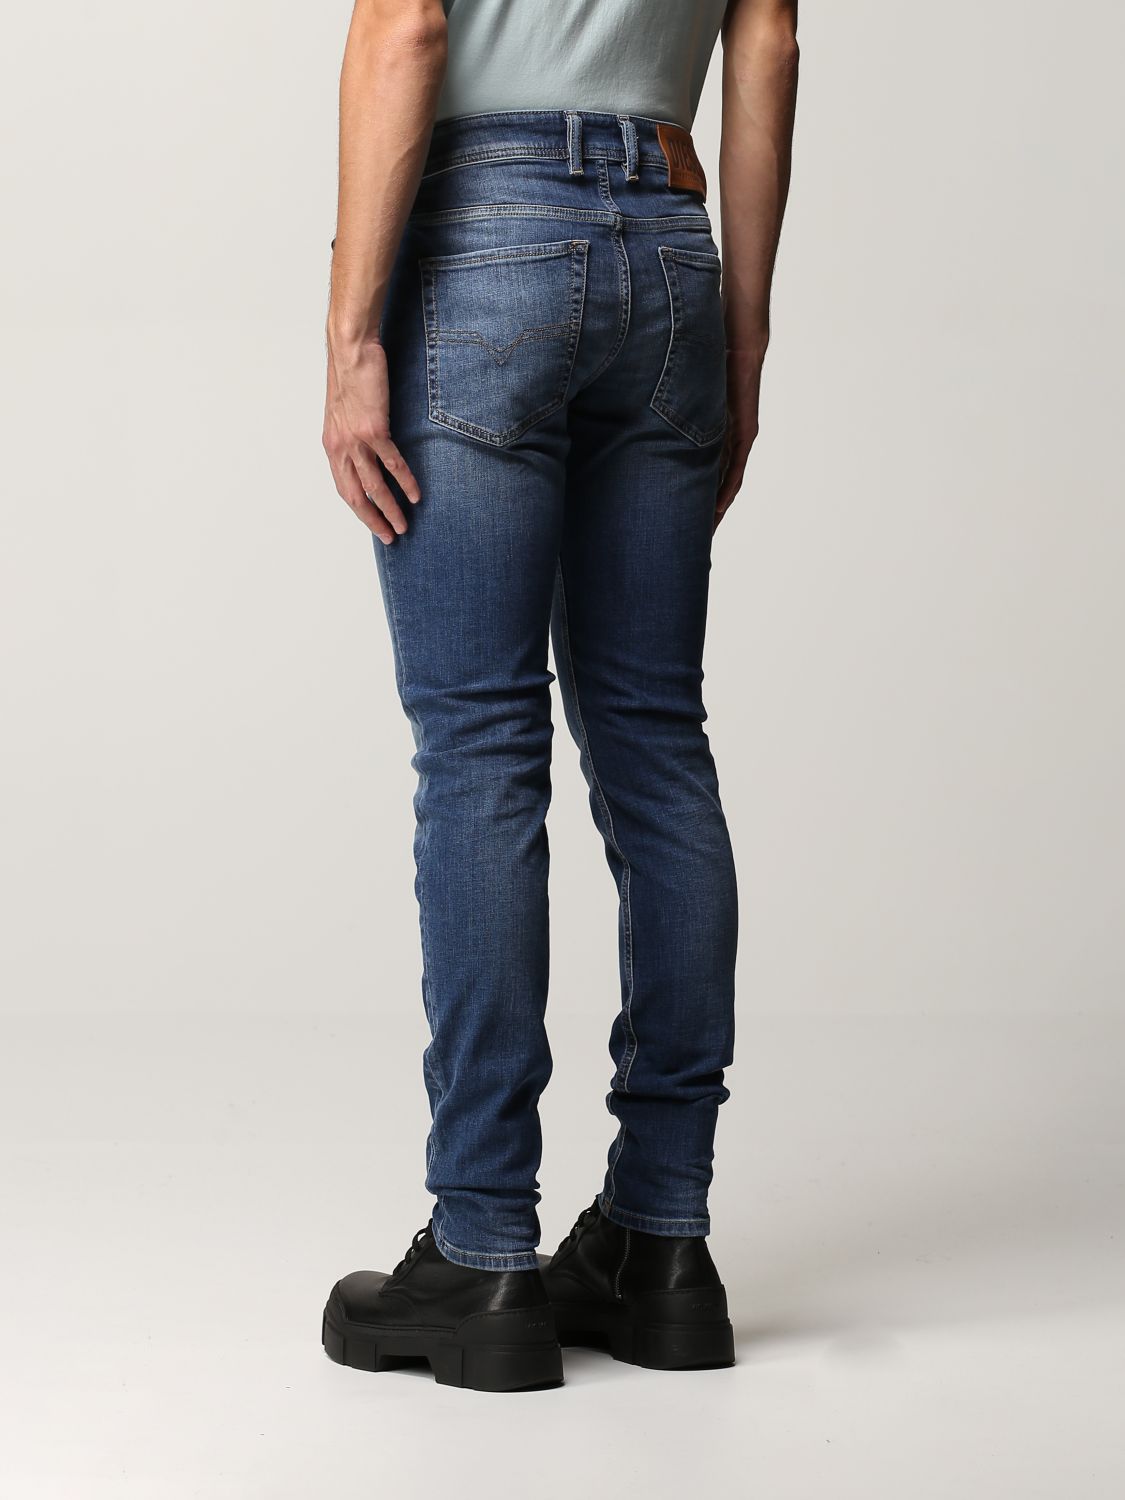 Lieve Resistent Uitvoerder DIESEL: Sleenker jeans in used skinny stretch denim - Denim | Diesel jeans  00SWJF 09A60 online on GIGLIO.COM